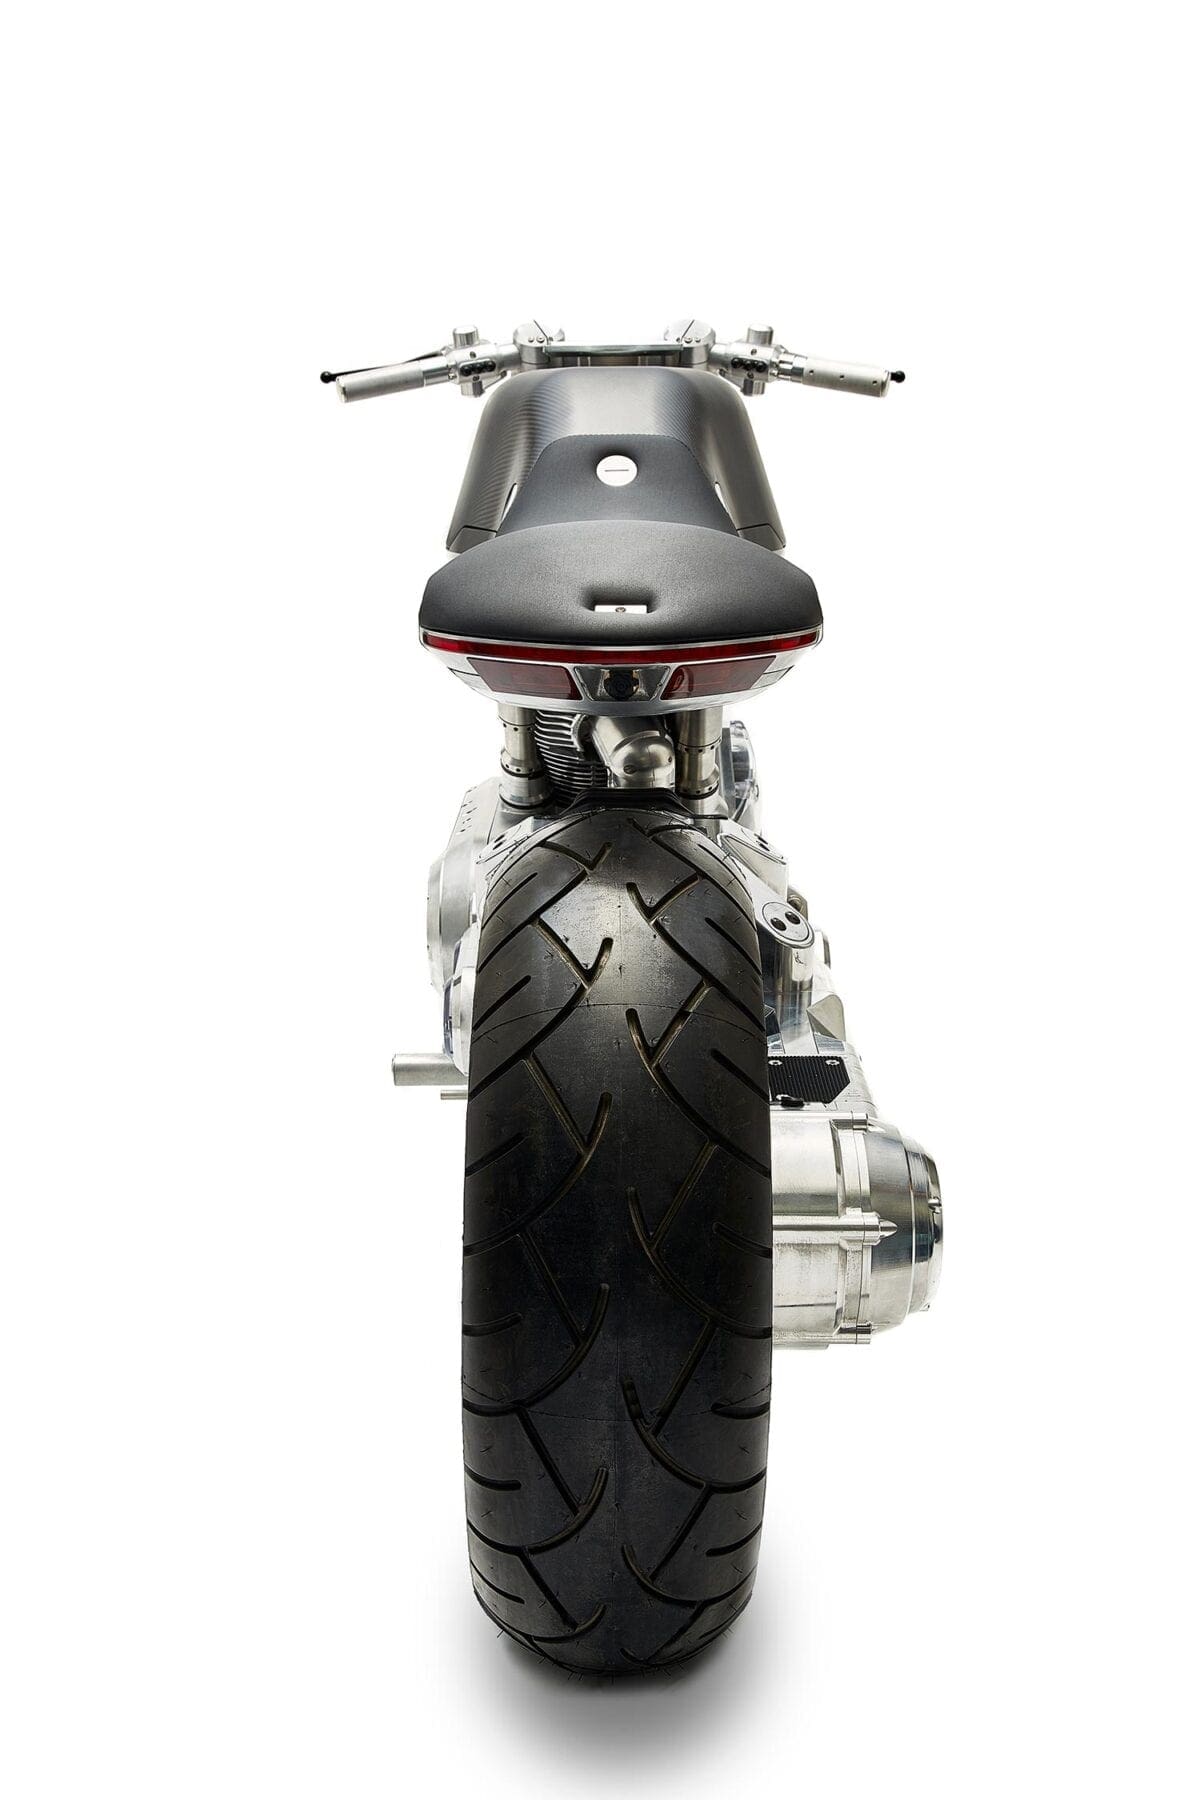 vanguard-motorcycles-roadster_016